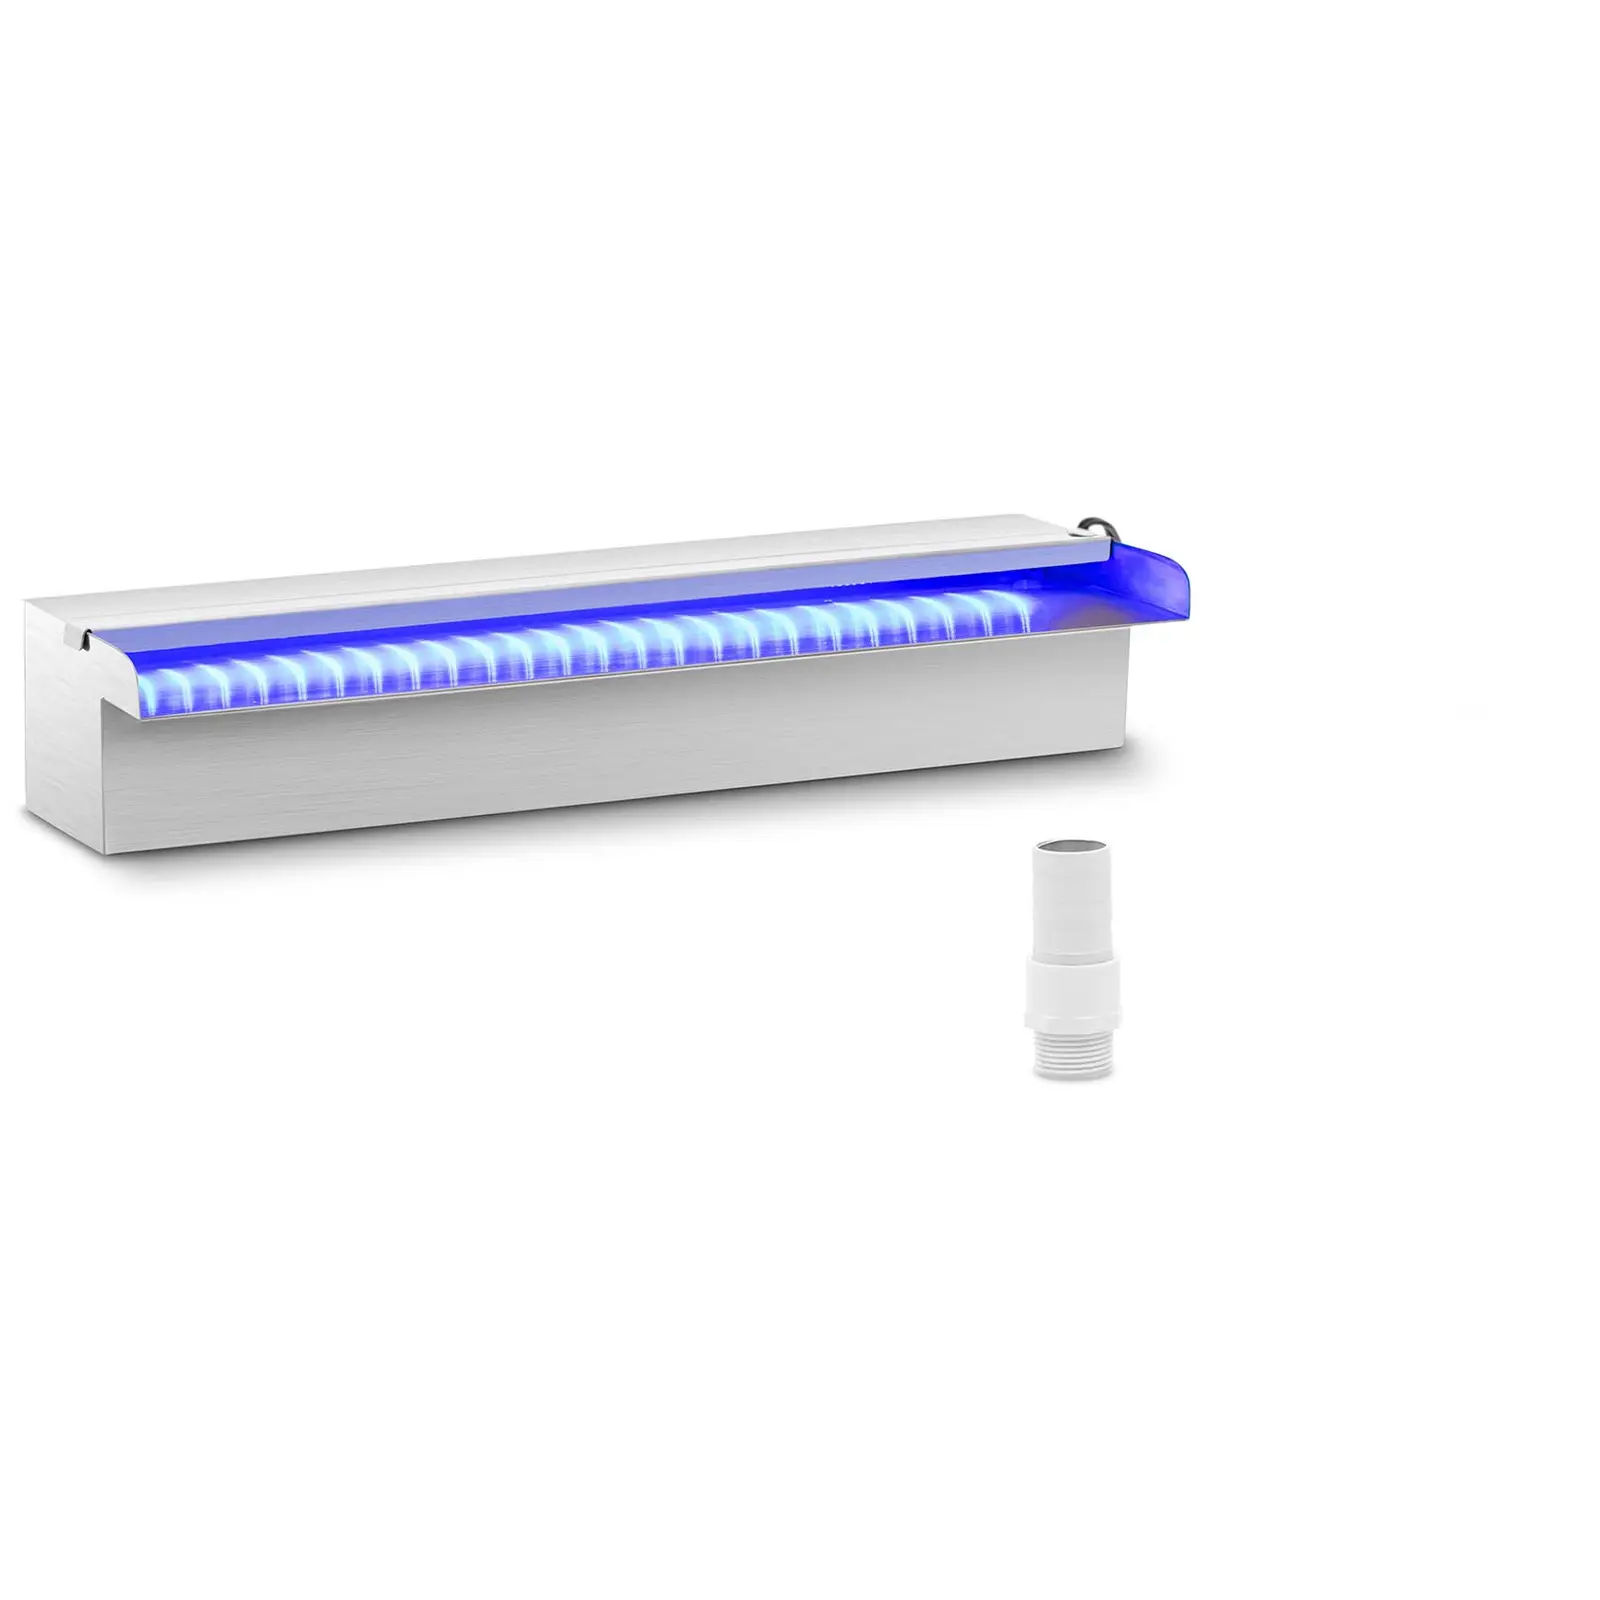 Naponski tuš - 45 cm - LED rasvjeta - Plavo/bijelo